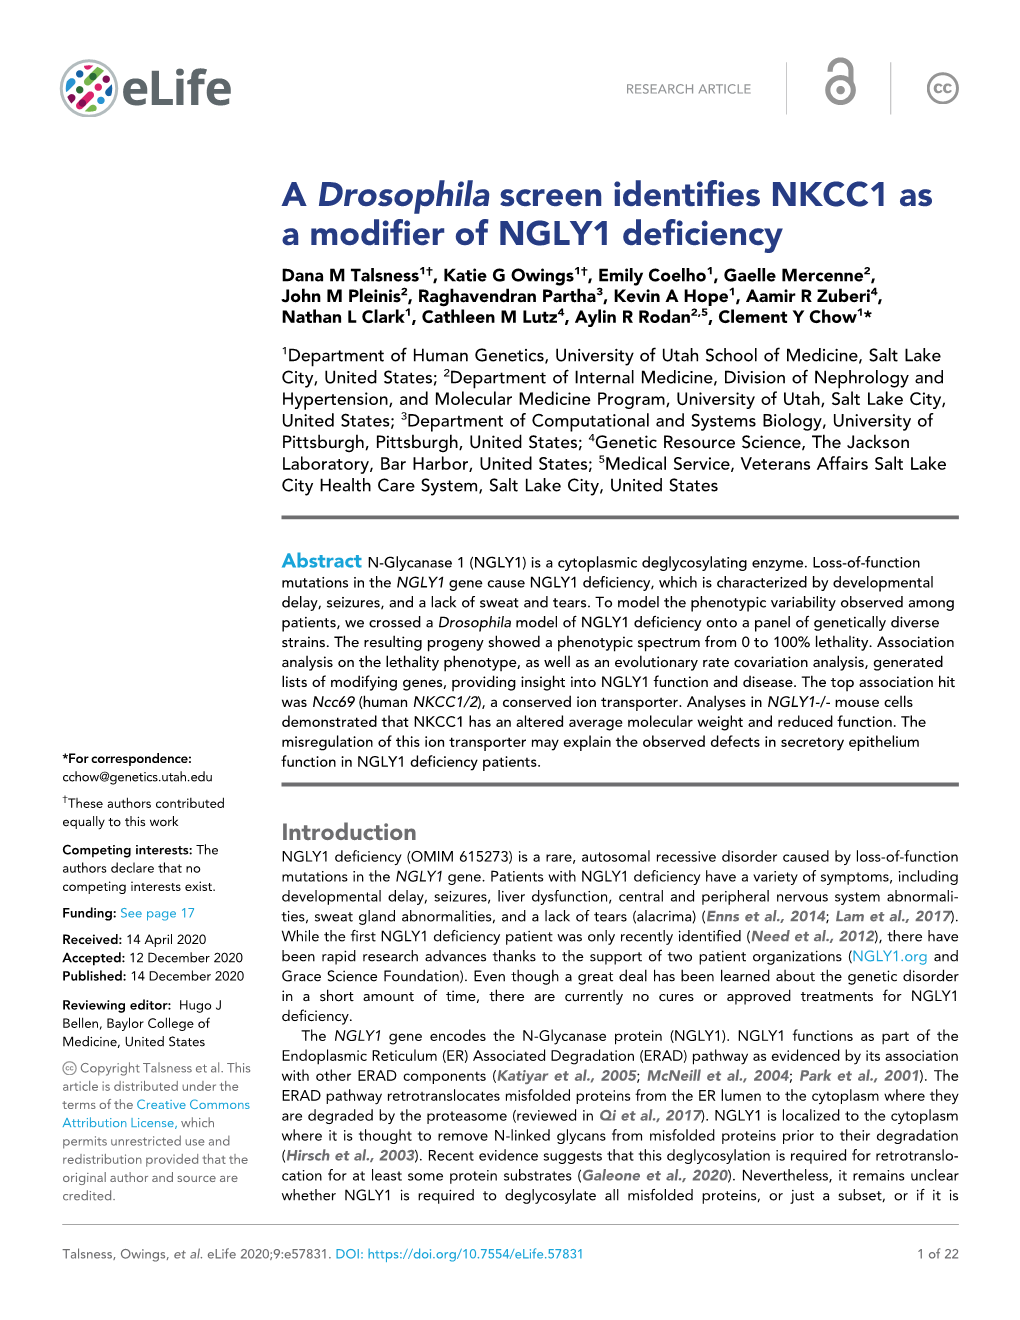 A Drosophila Screen Identifies NKCC1 As a Modifier of NGLY1 Deficiency